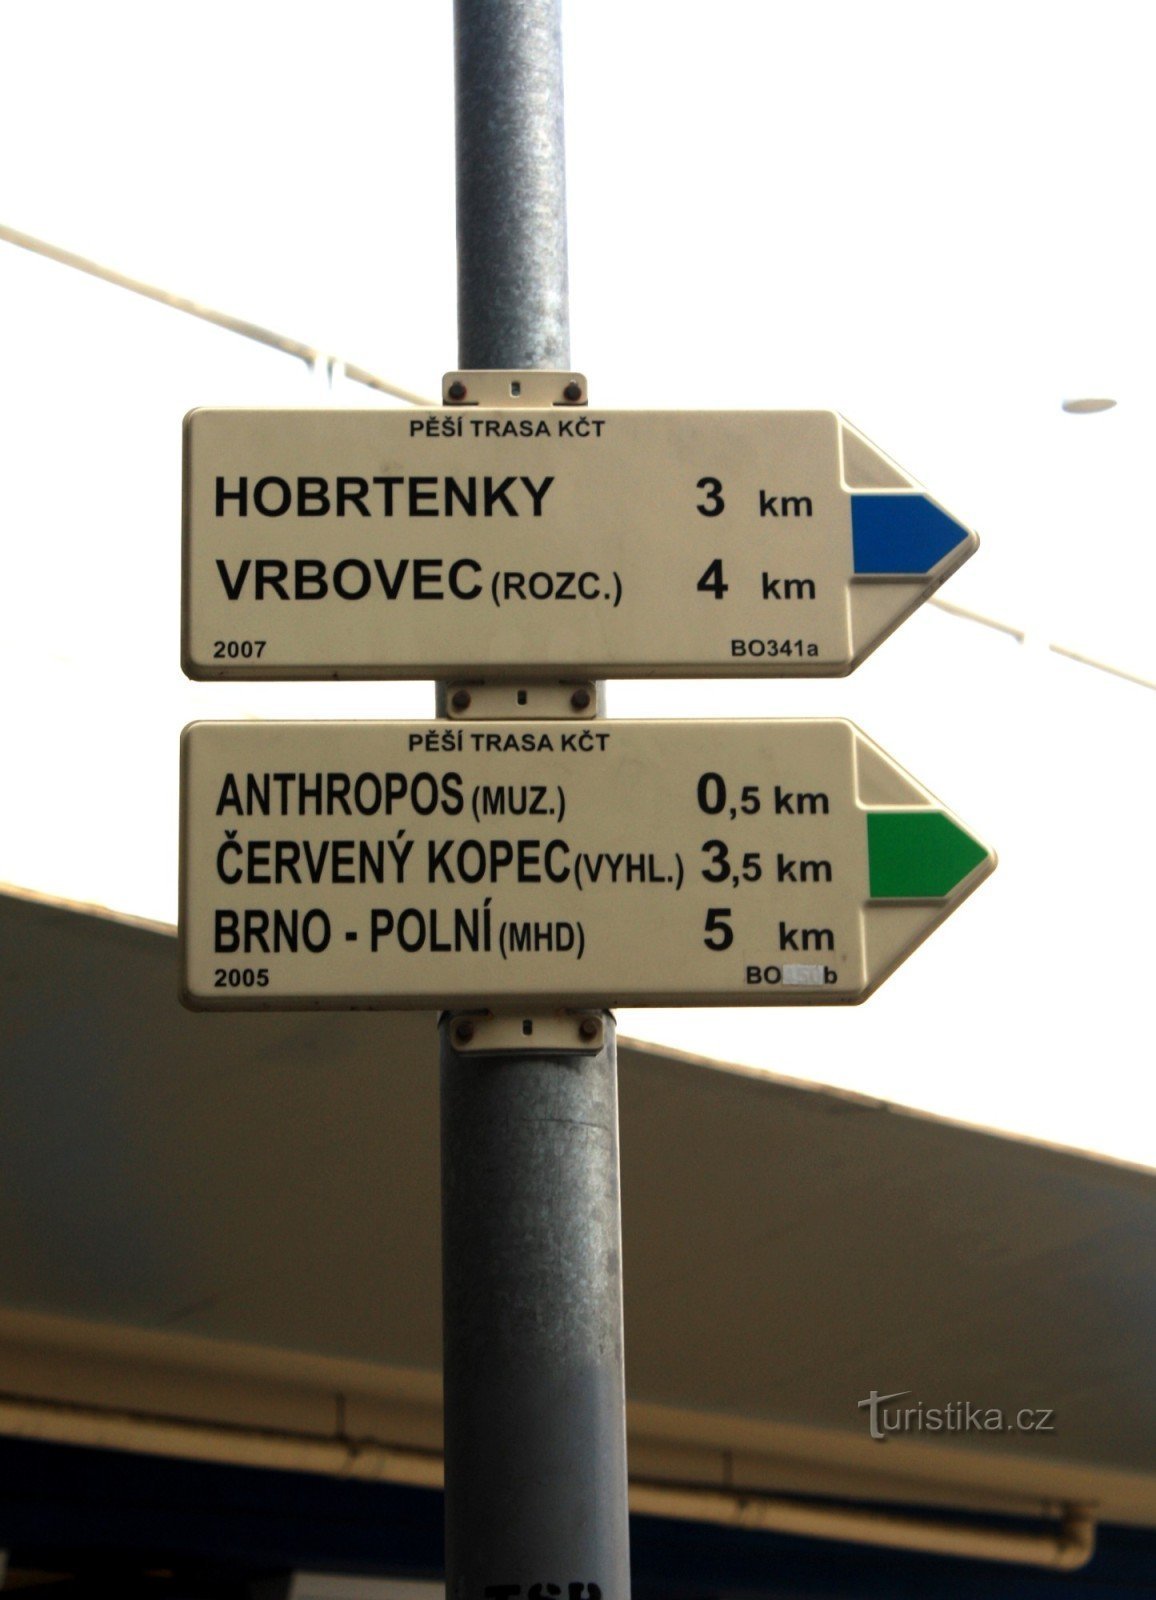 Encrucijada turística Brno-Pisárky